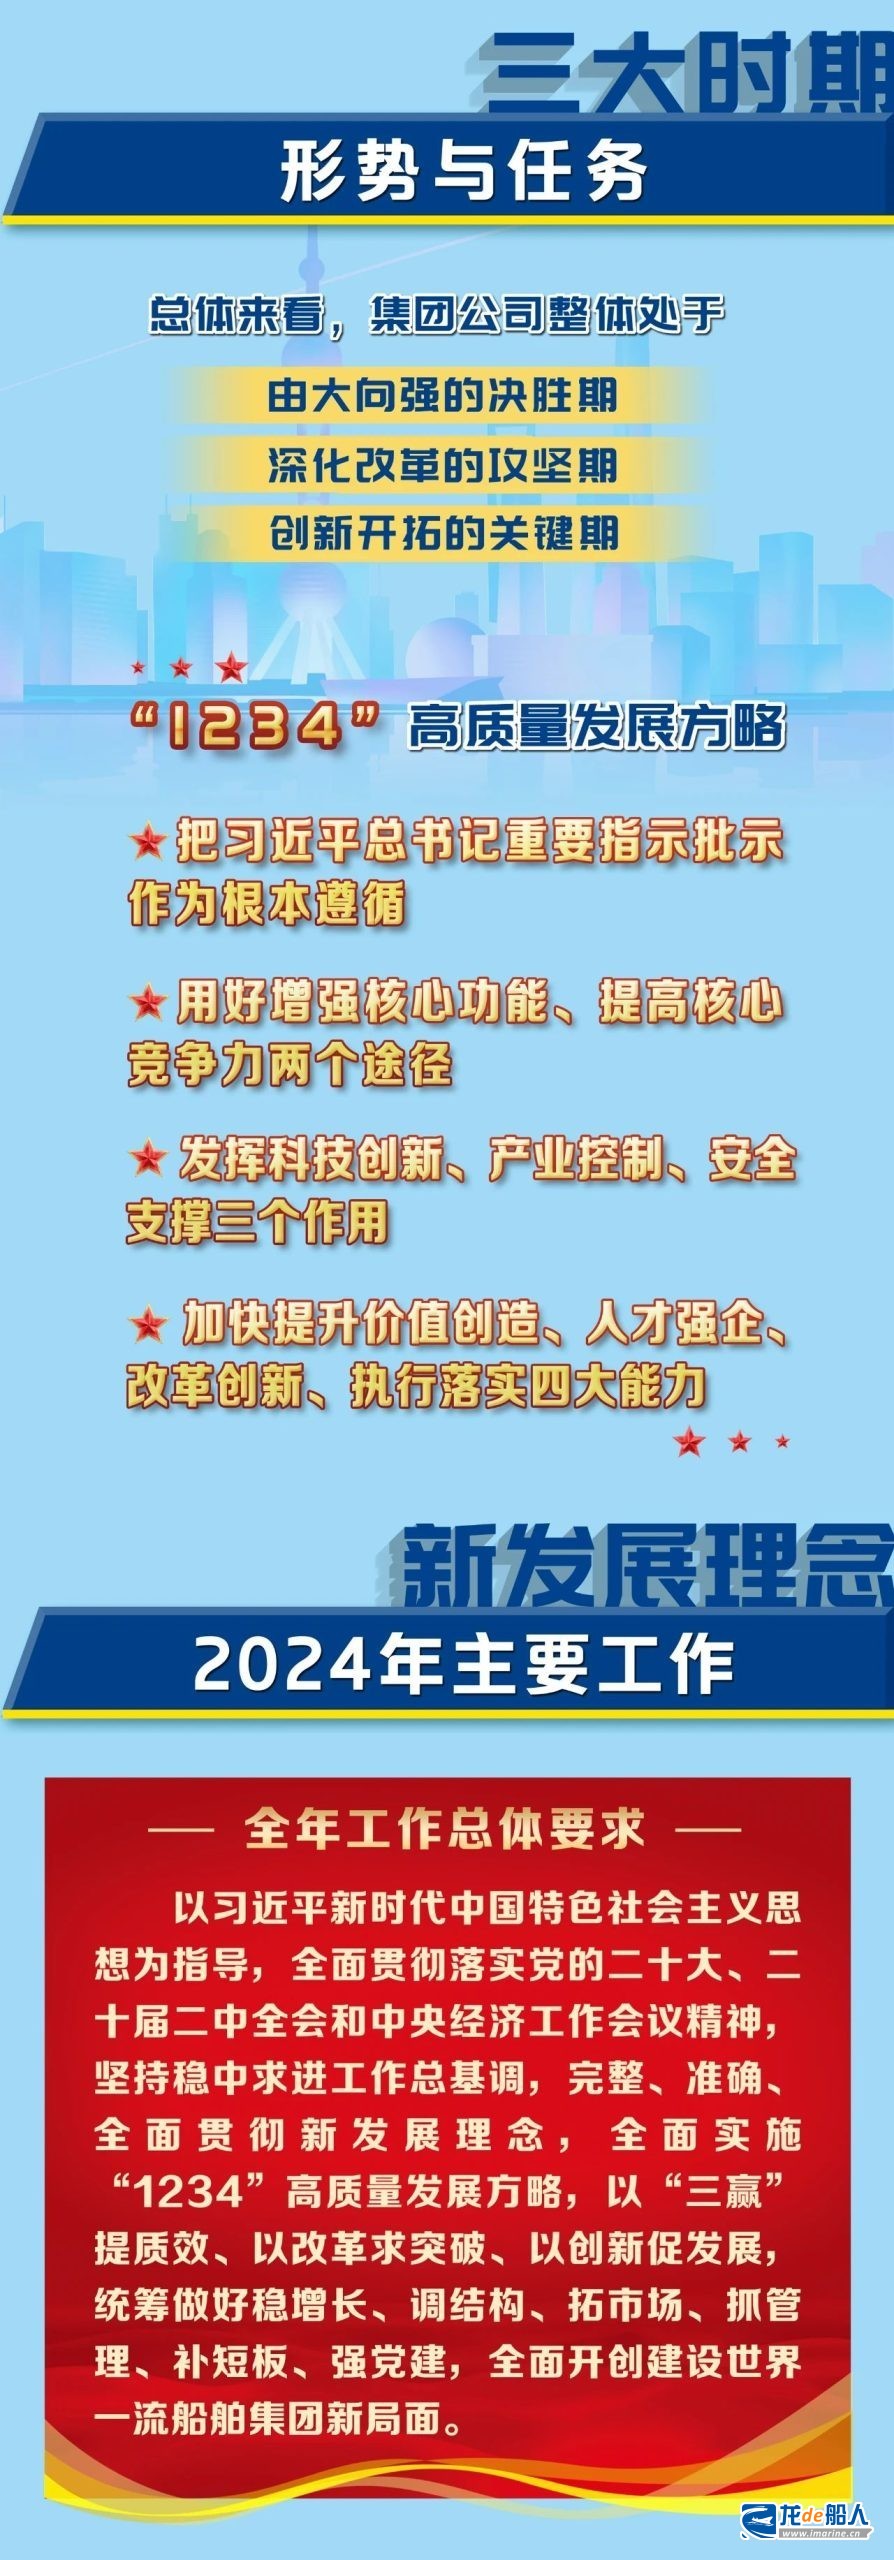 中国船舶集团2024年度工作会报告重点